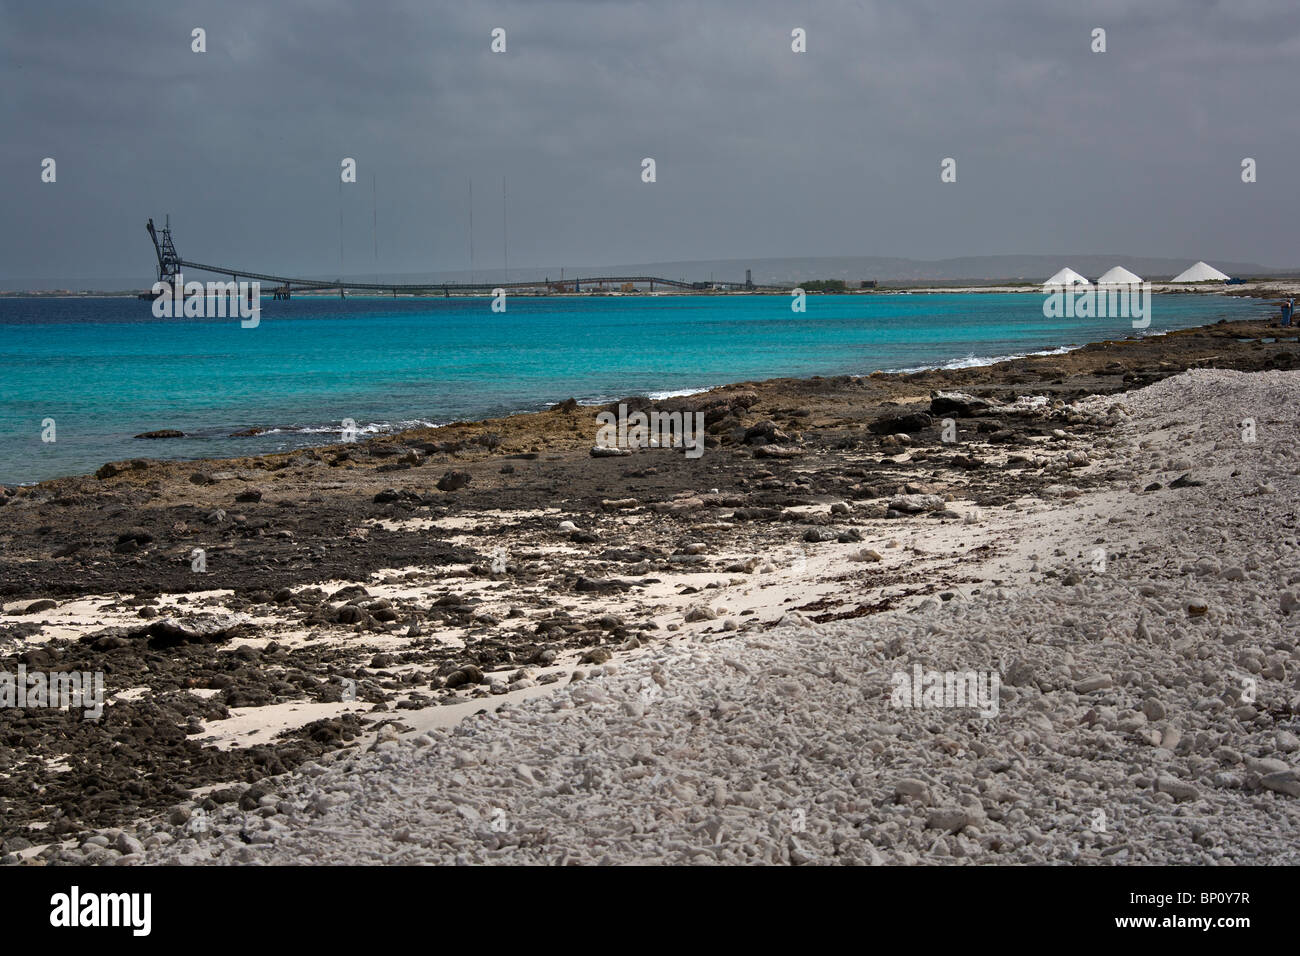 Le miniere di sale, il paesaggio e la spiaggia. Bonraire, Antille olandesi, Caraibi, Sud America Foto Stock